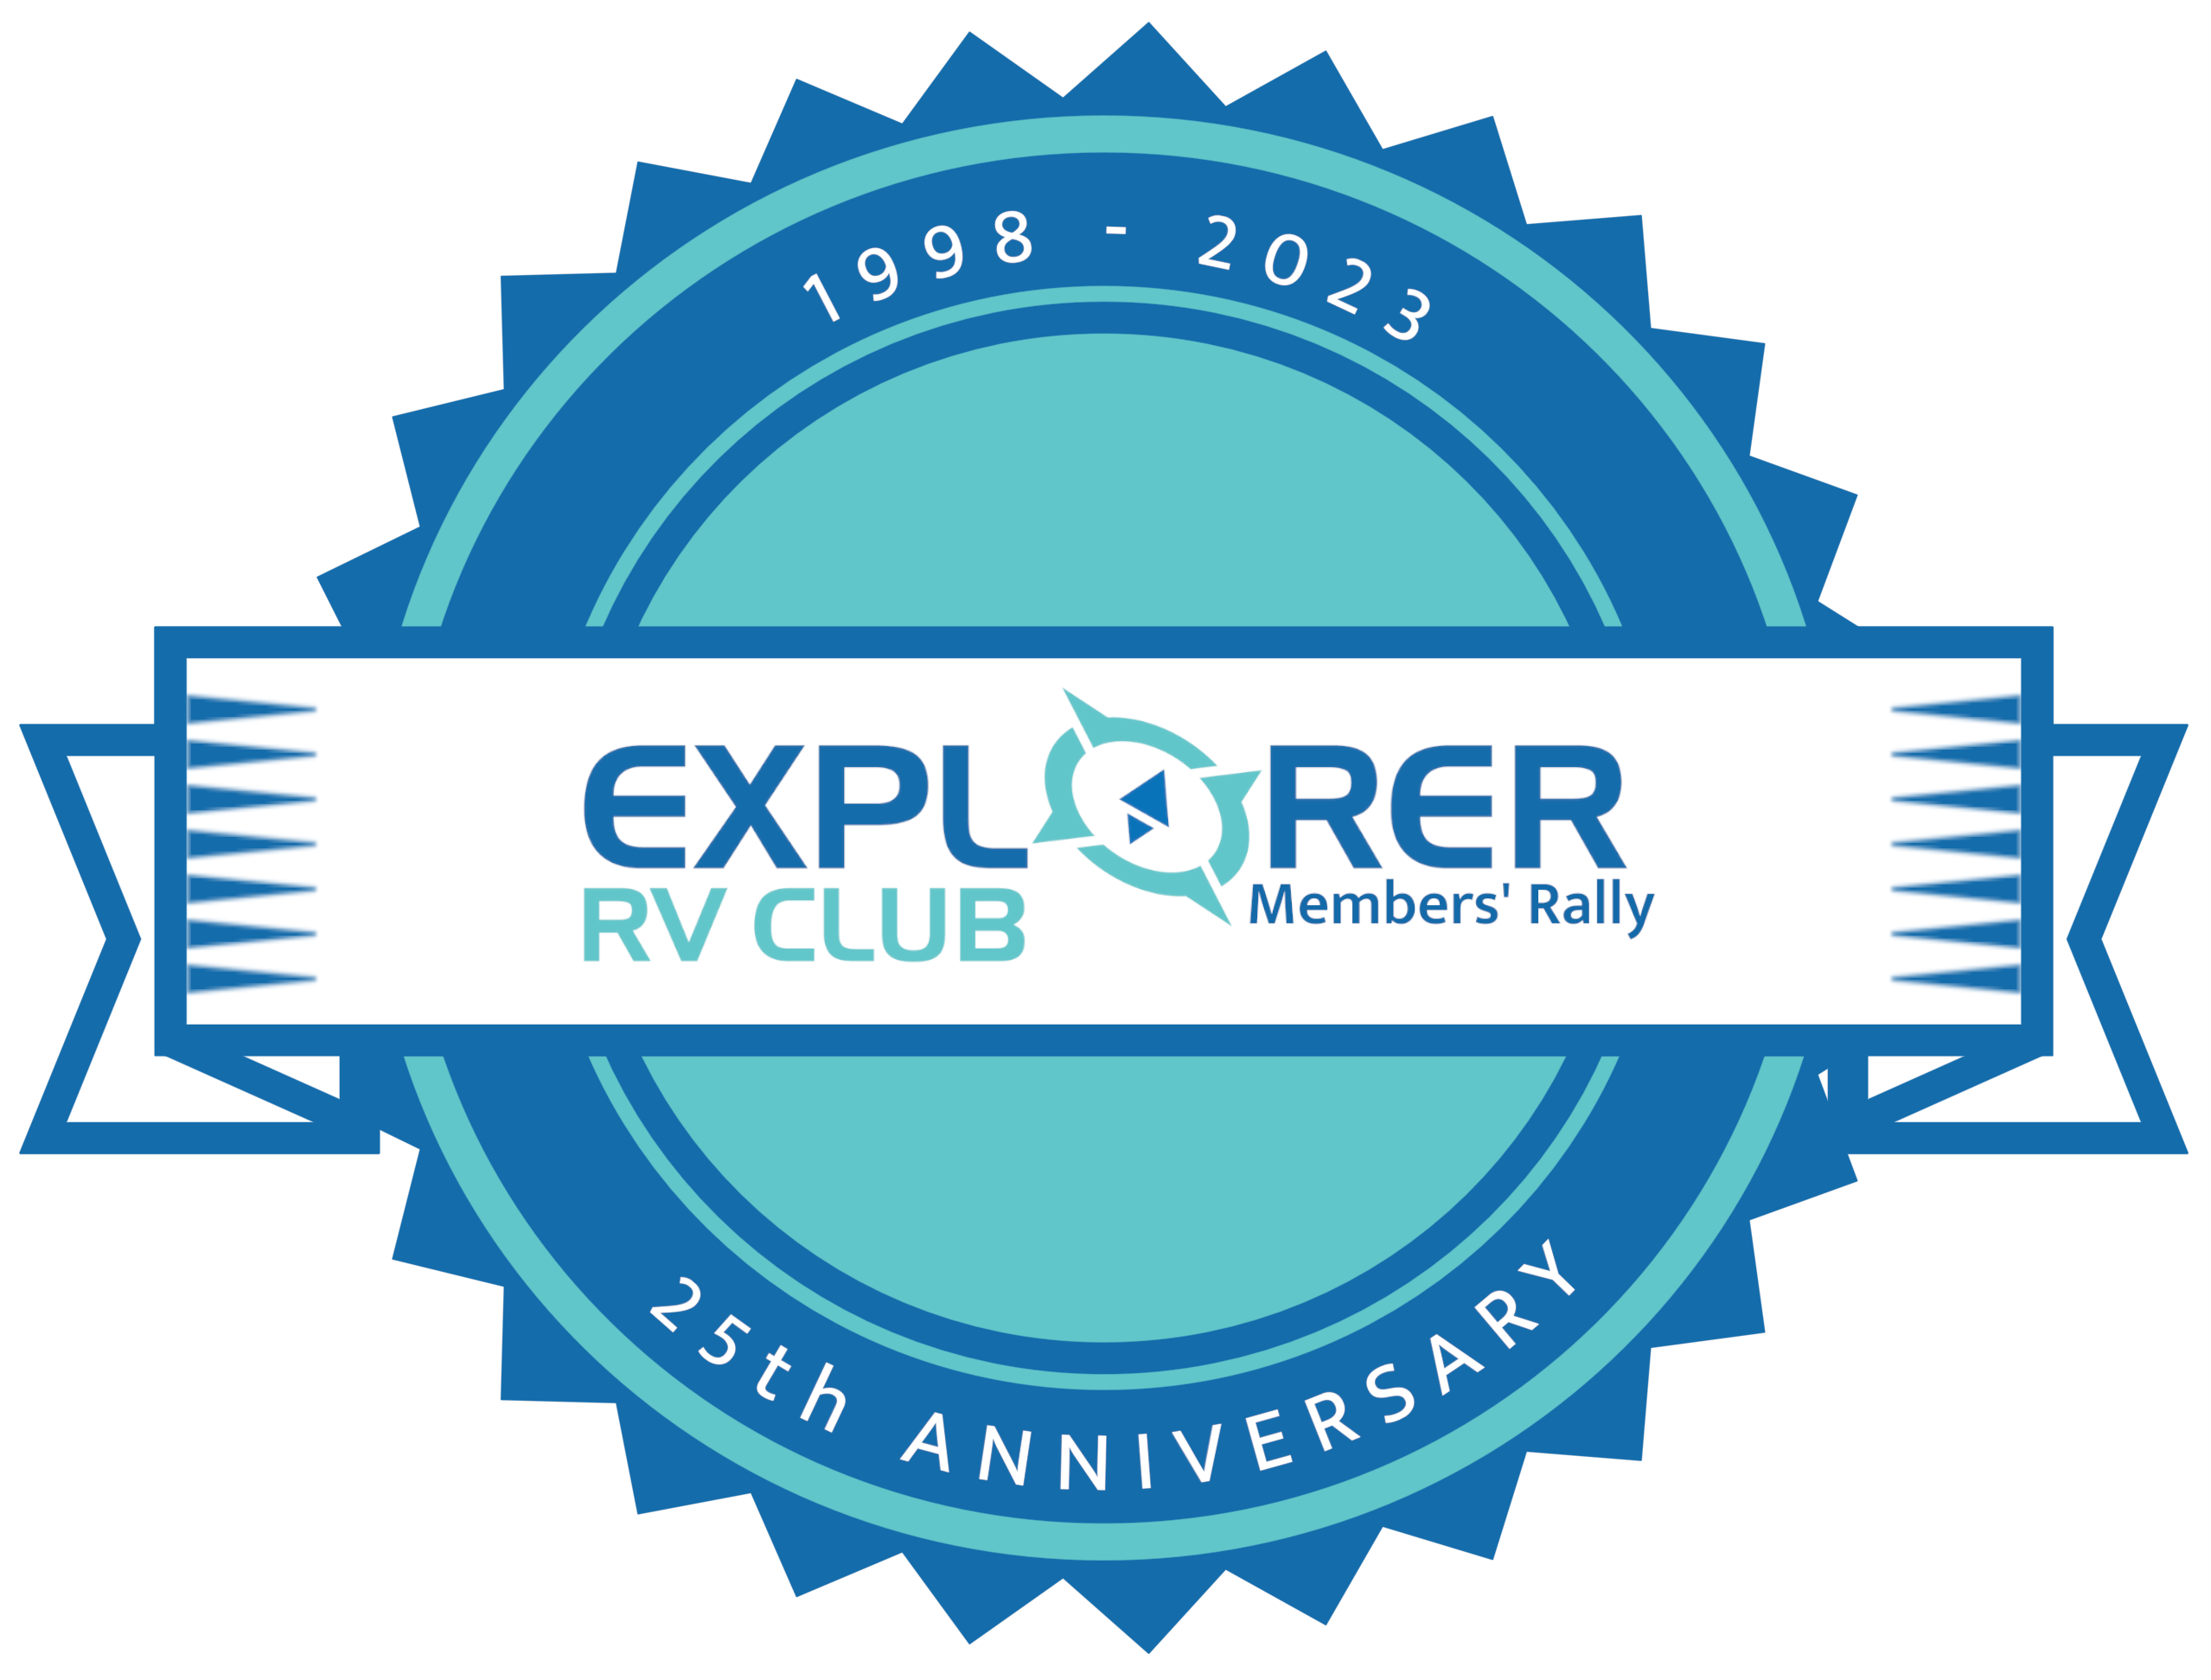 Explorer RV Club 25th Anniversary badge, 1998-2023